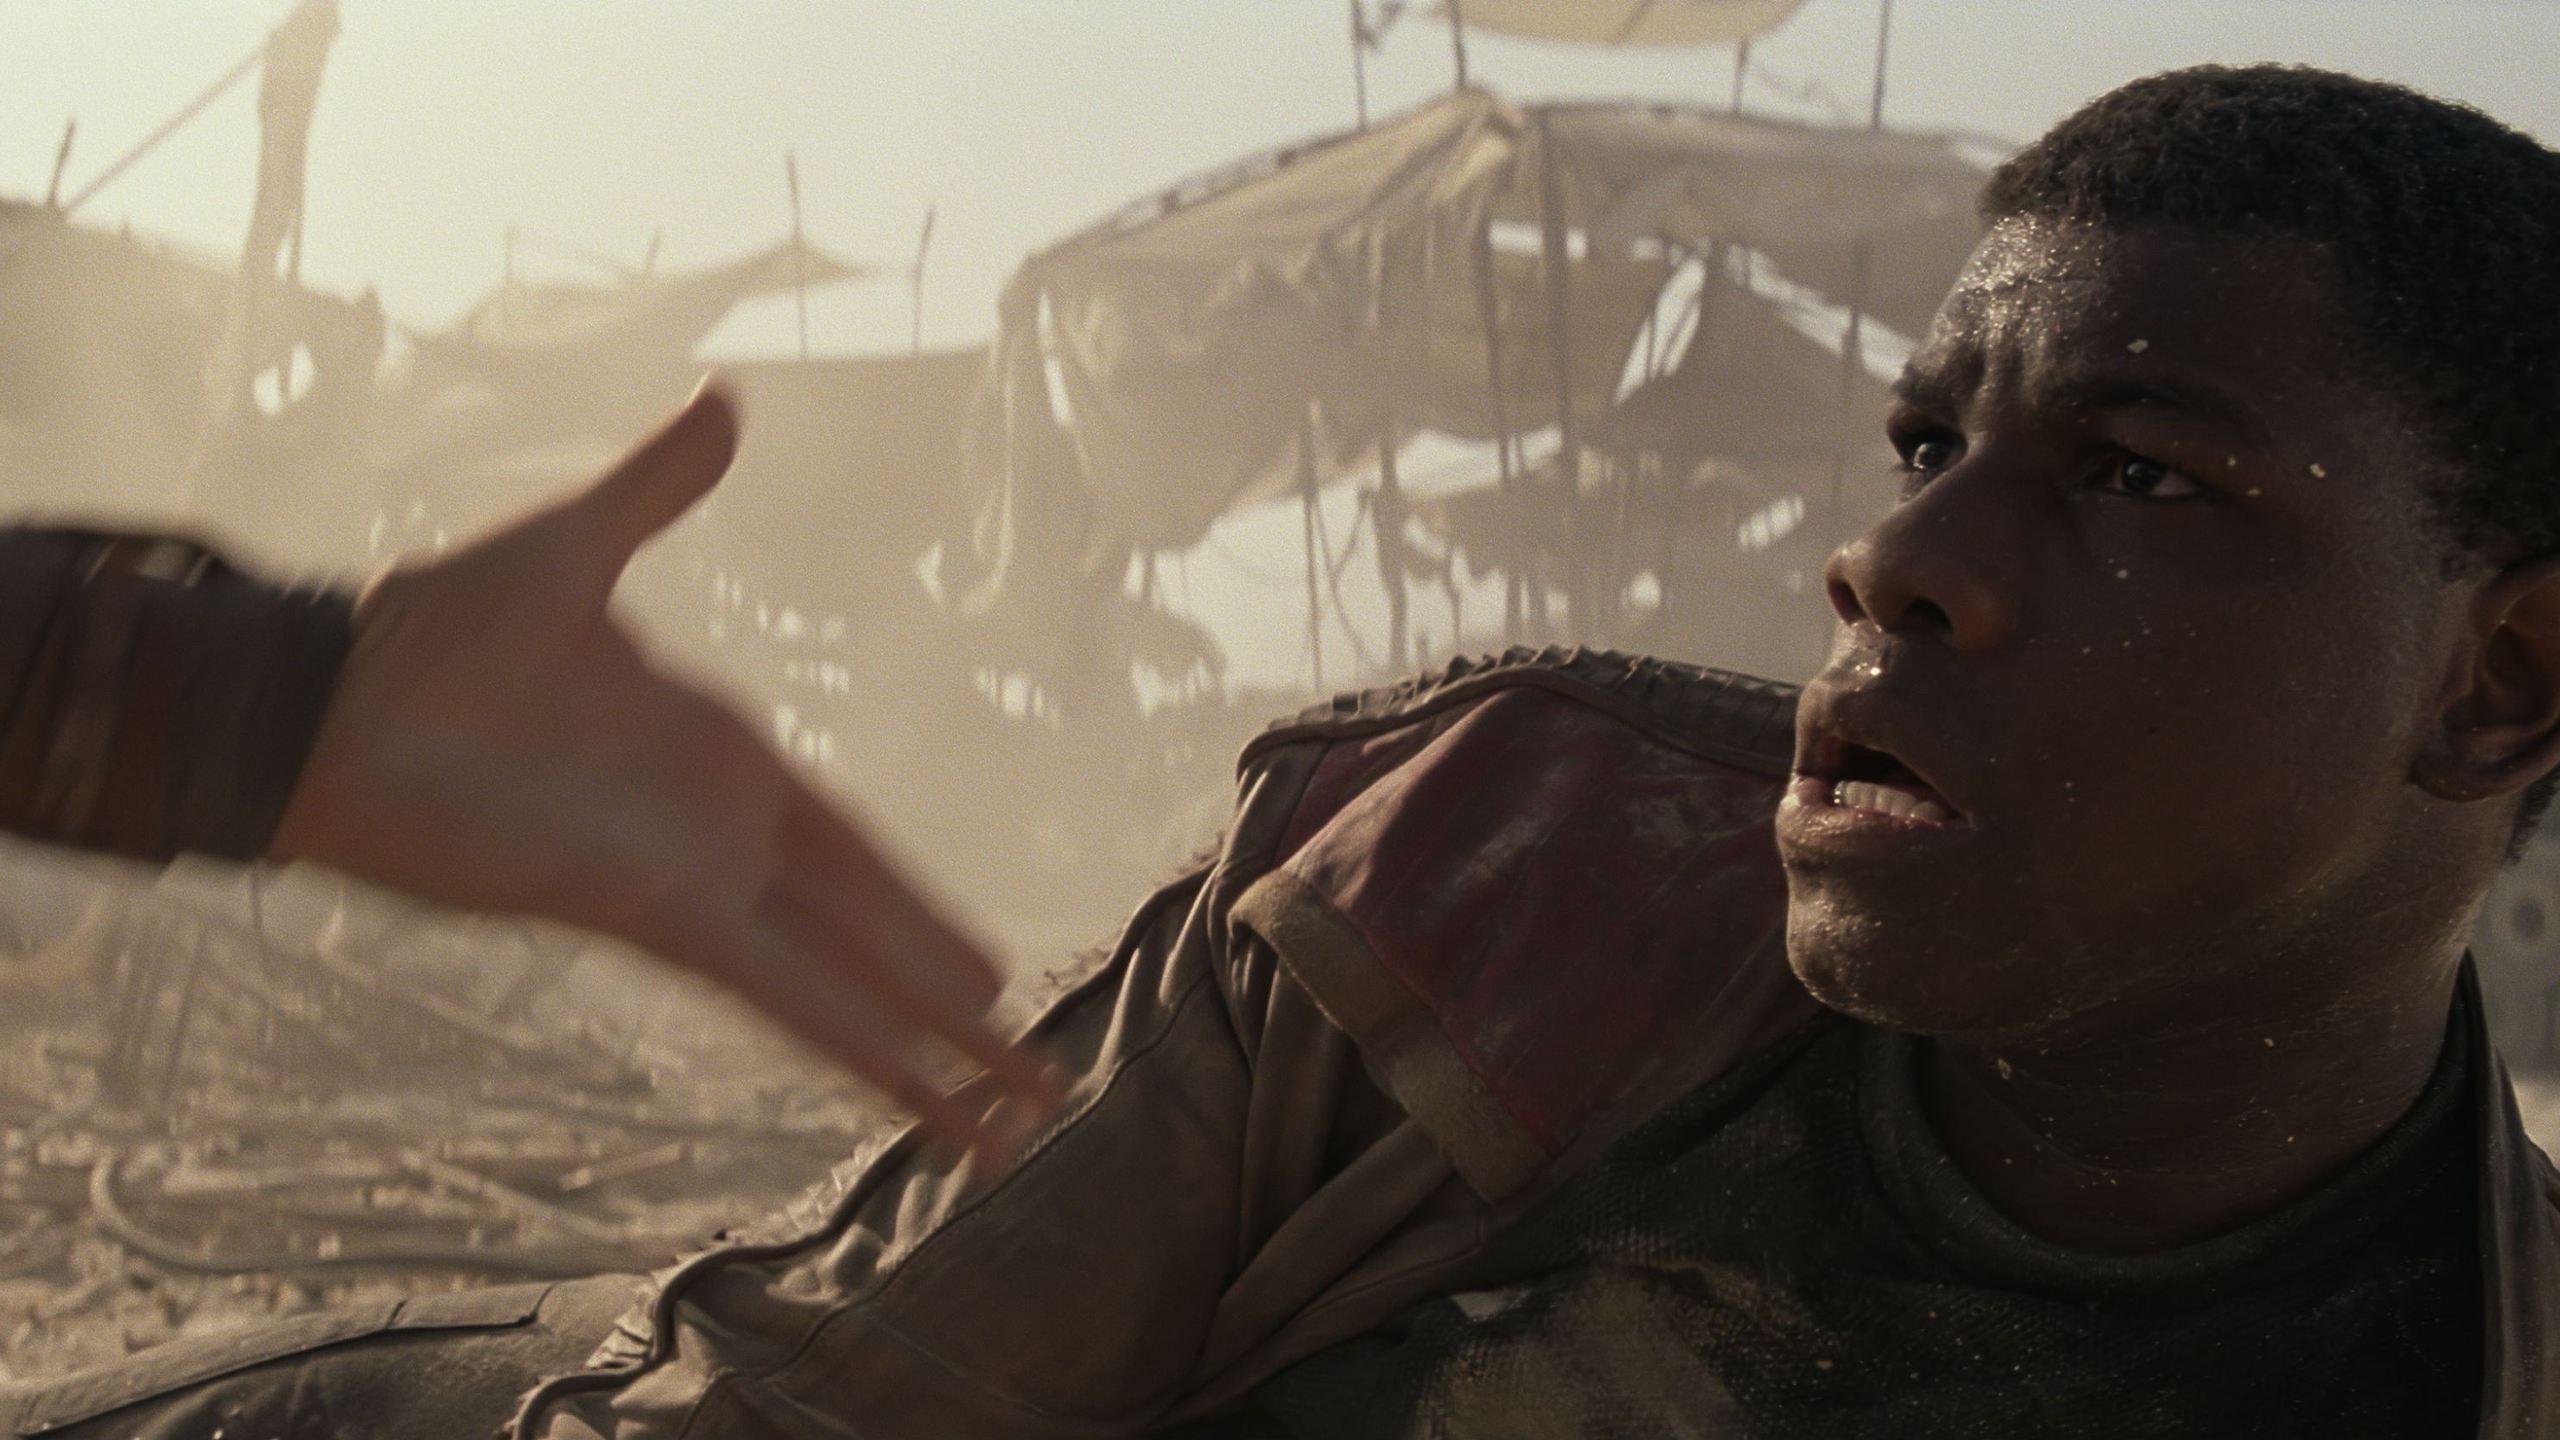 Star Wars The Force Awakens John Boyega for 2560x1440 HDTV resolution